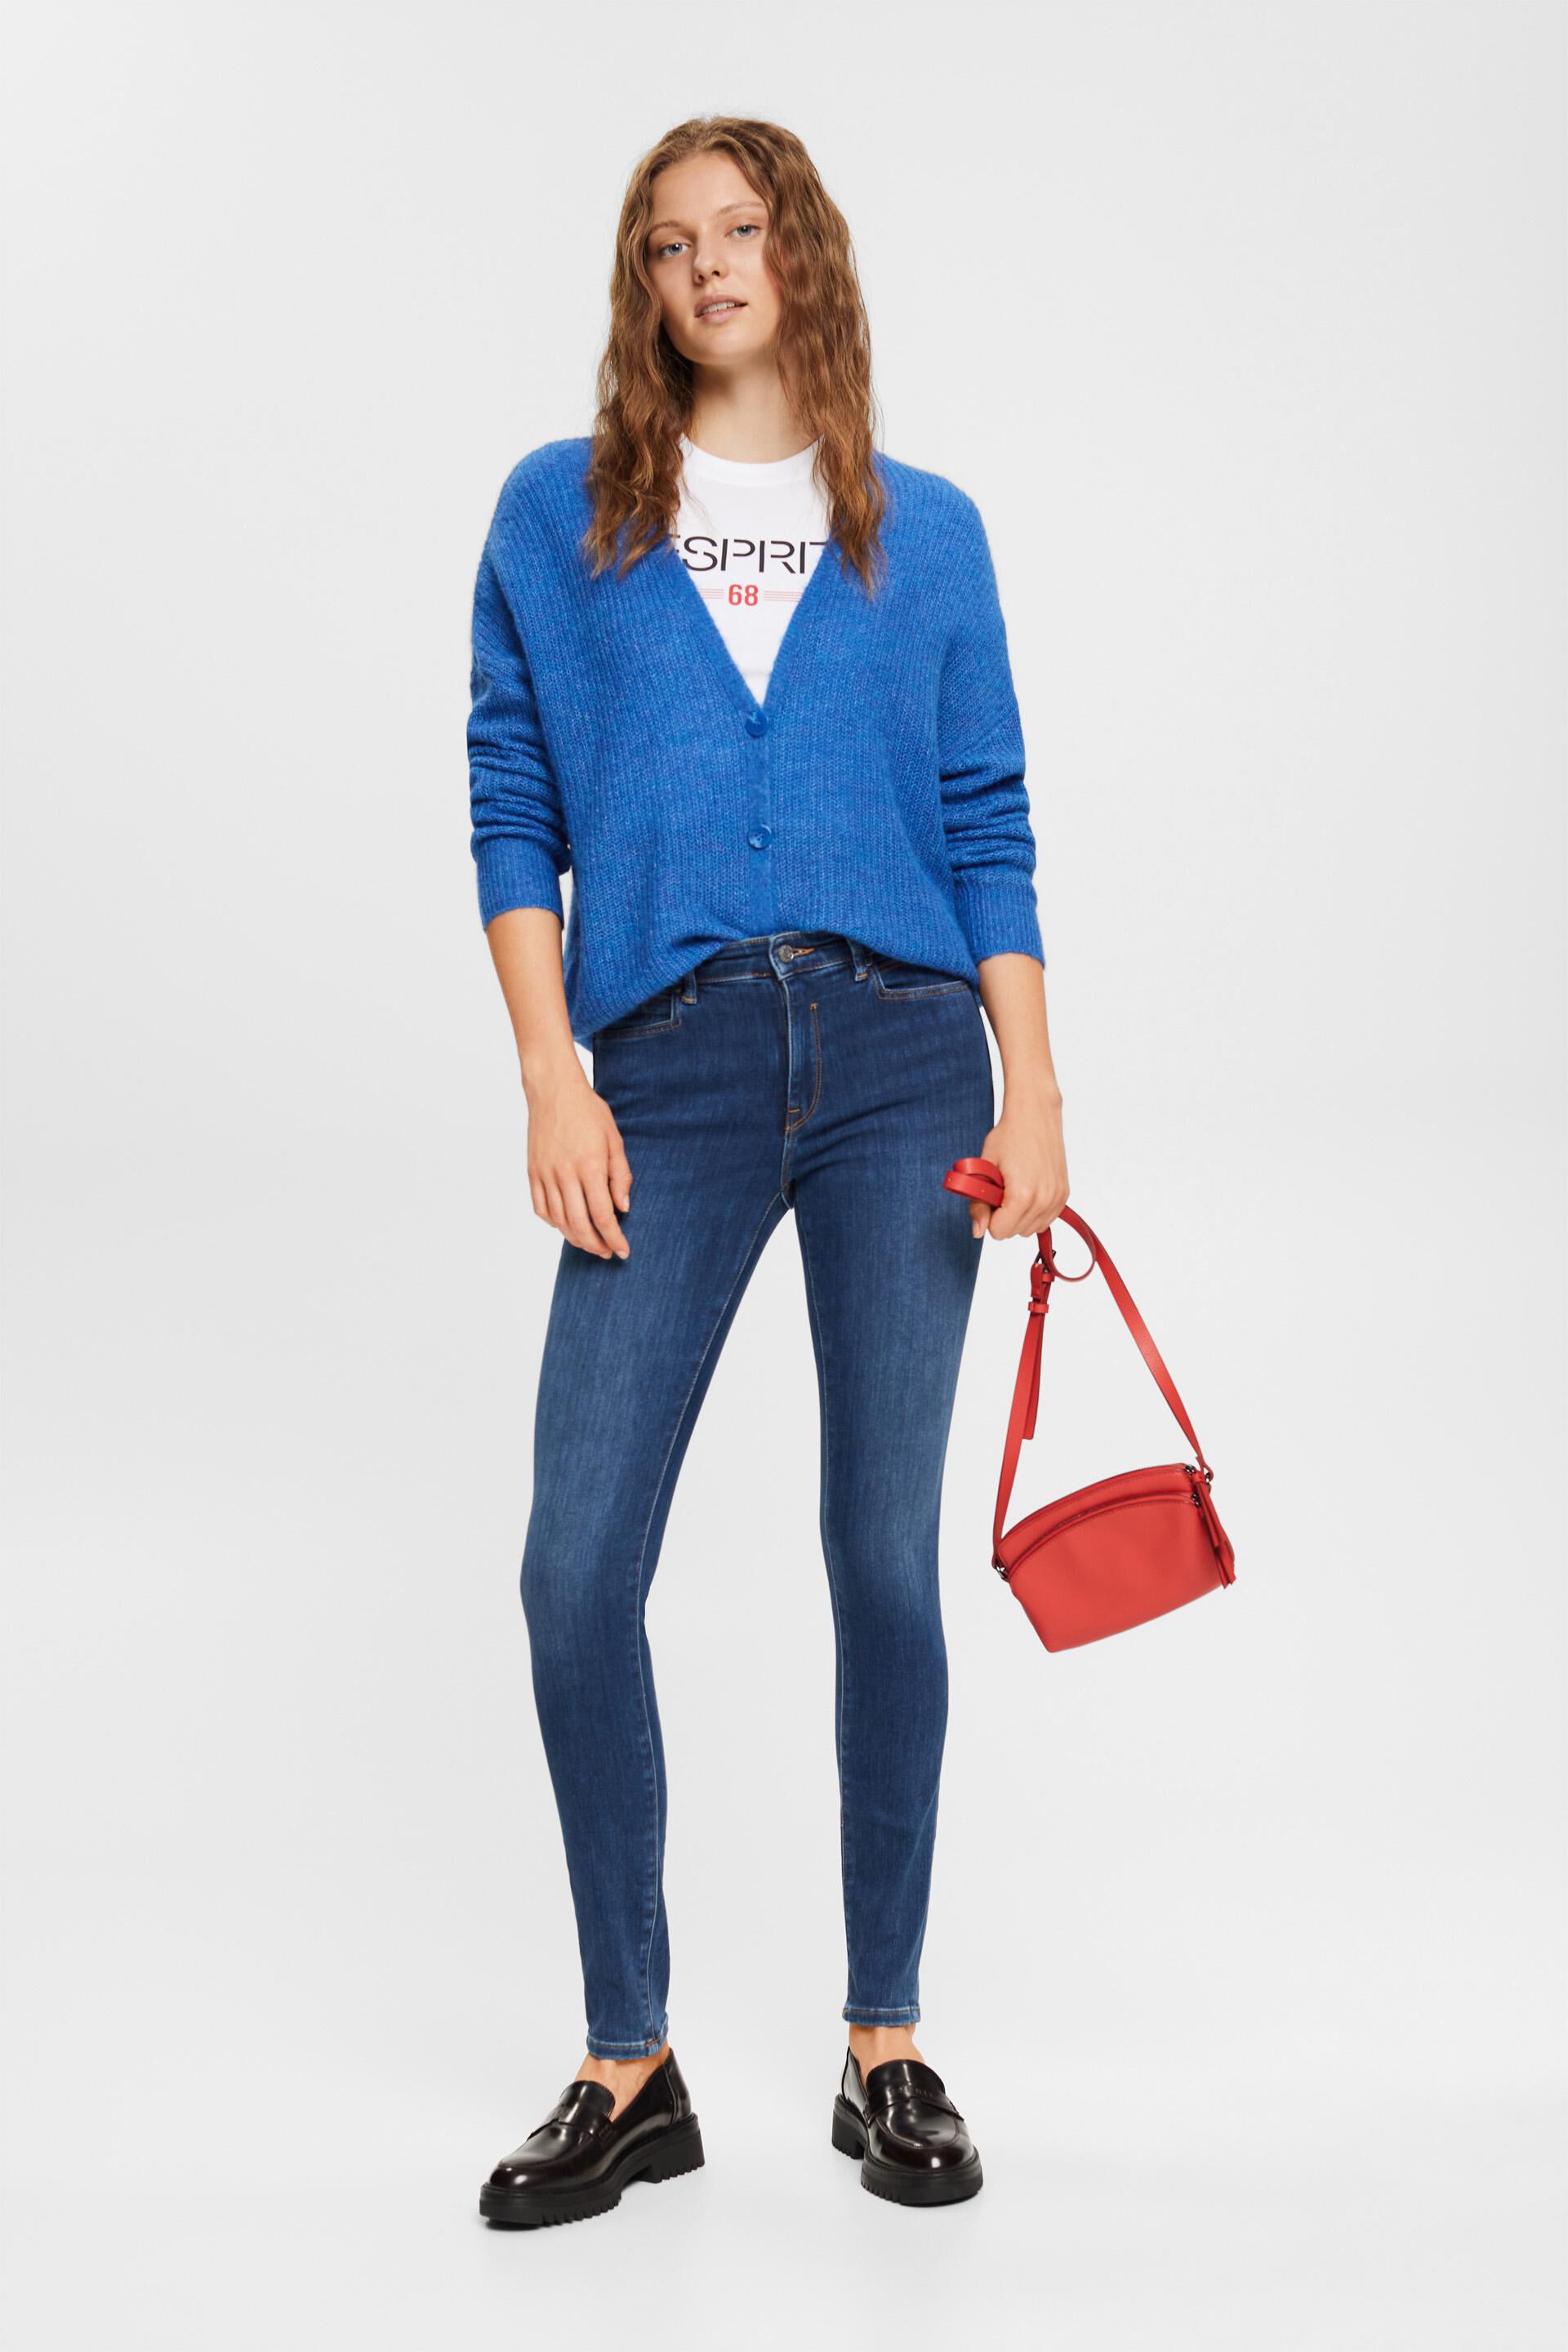 Esprit Shirt Met Lange Mouwen 083ee1k051 in het Wit Dames Kleding voor voor Jeans voor Skinny jeans 